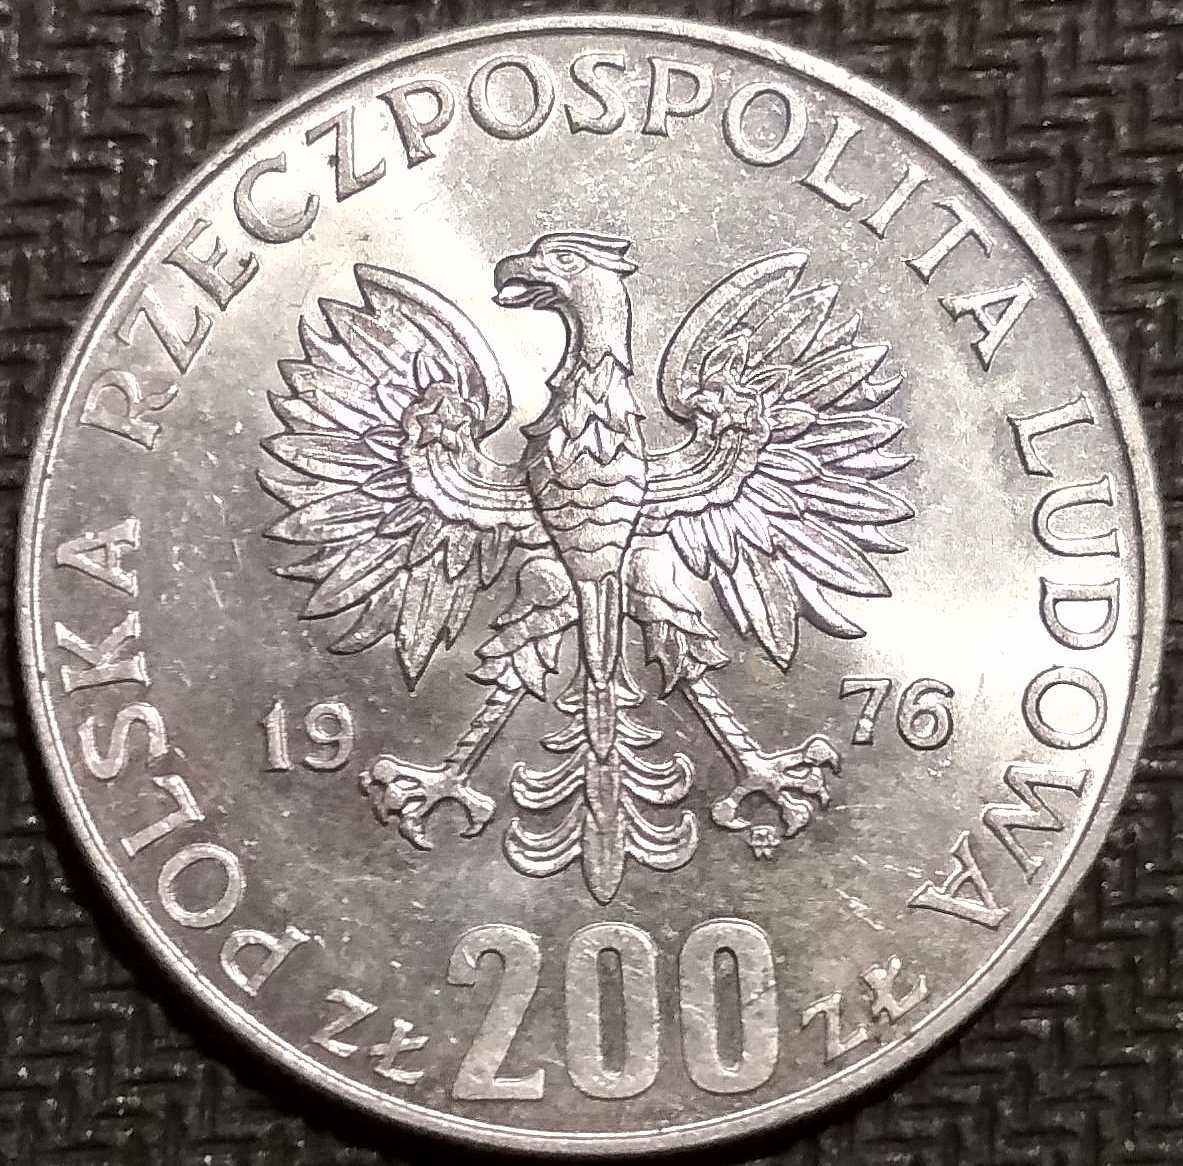 Moneta srebrna 200 zł. XXI Letnie Igrzyska Olimpijskie 1976 Montreal